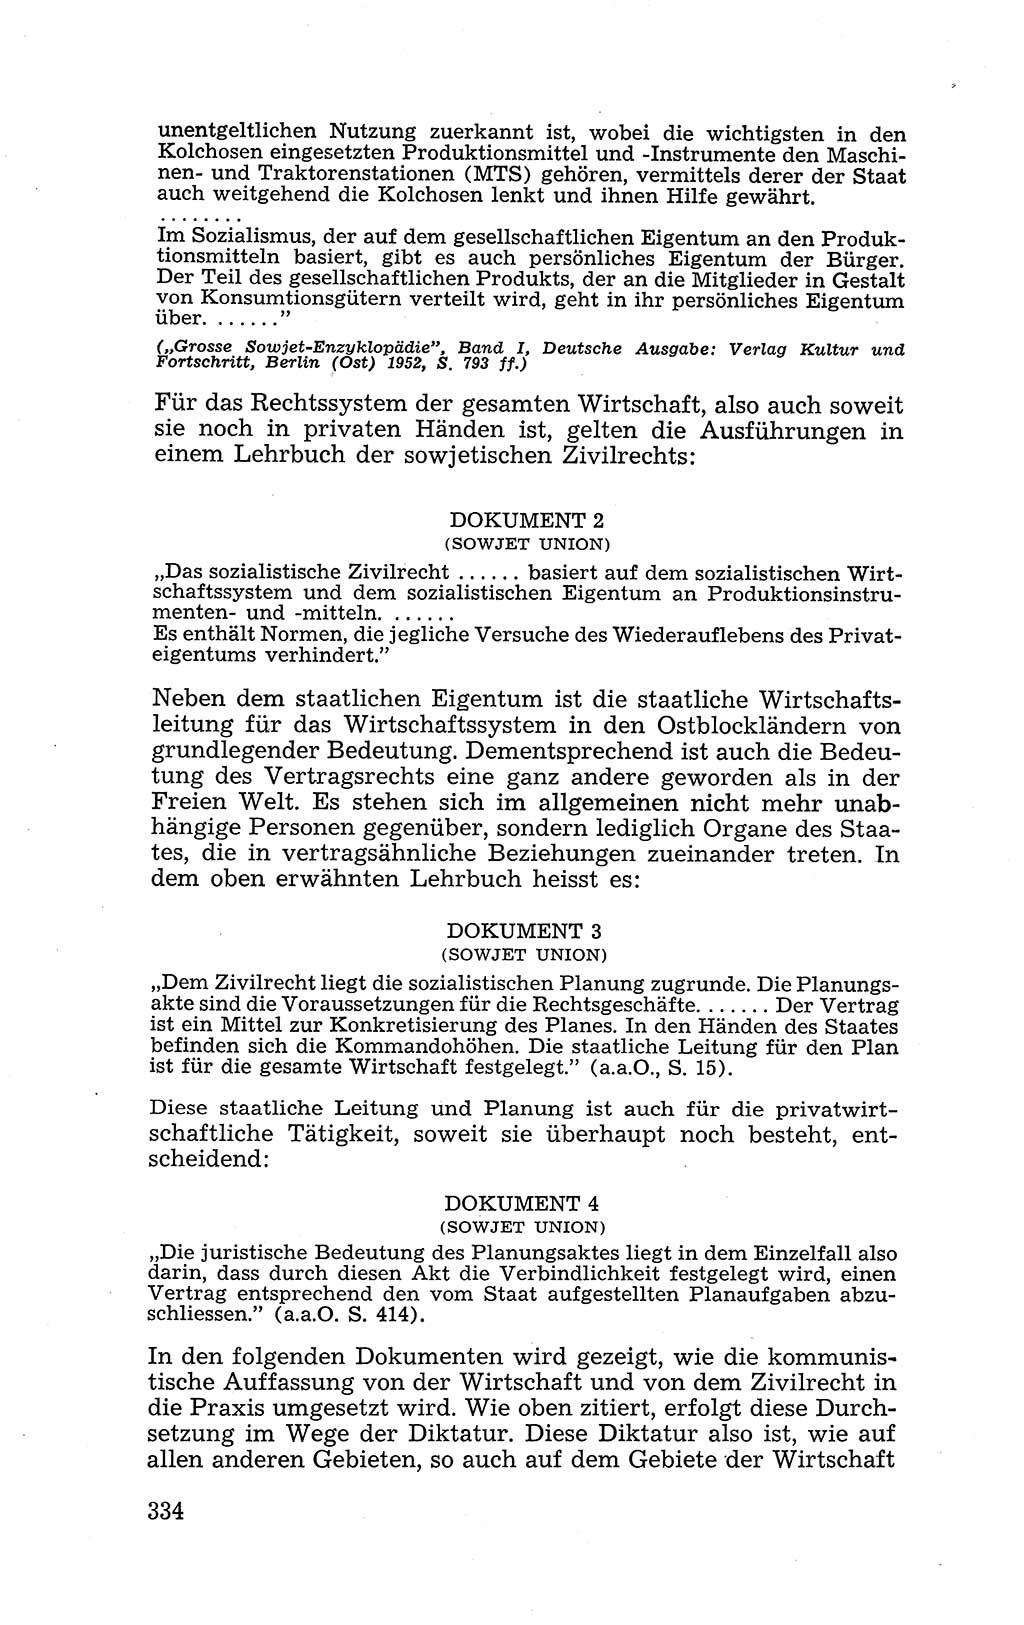 Recht in Fesseln, Dokumente, Internationale Juristen-Kommission [Bundesrepublik Deutschland (BRD)] 1955, Seite 334 (R. Dok. IJK BRD 1955, S. 334)